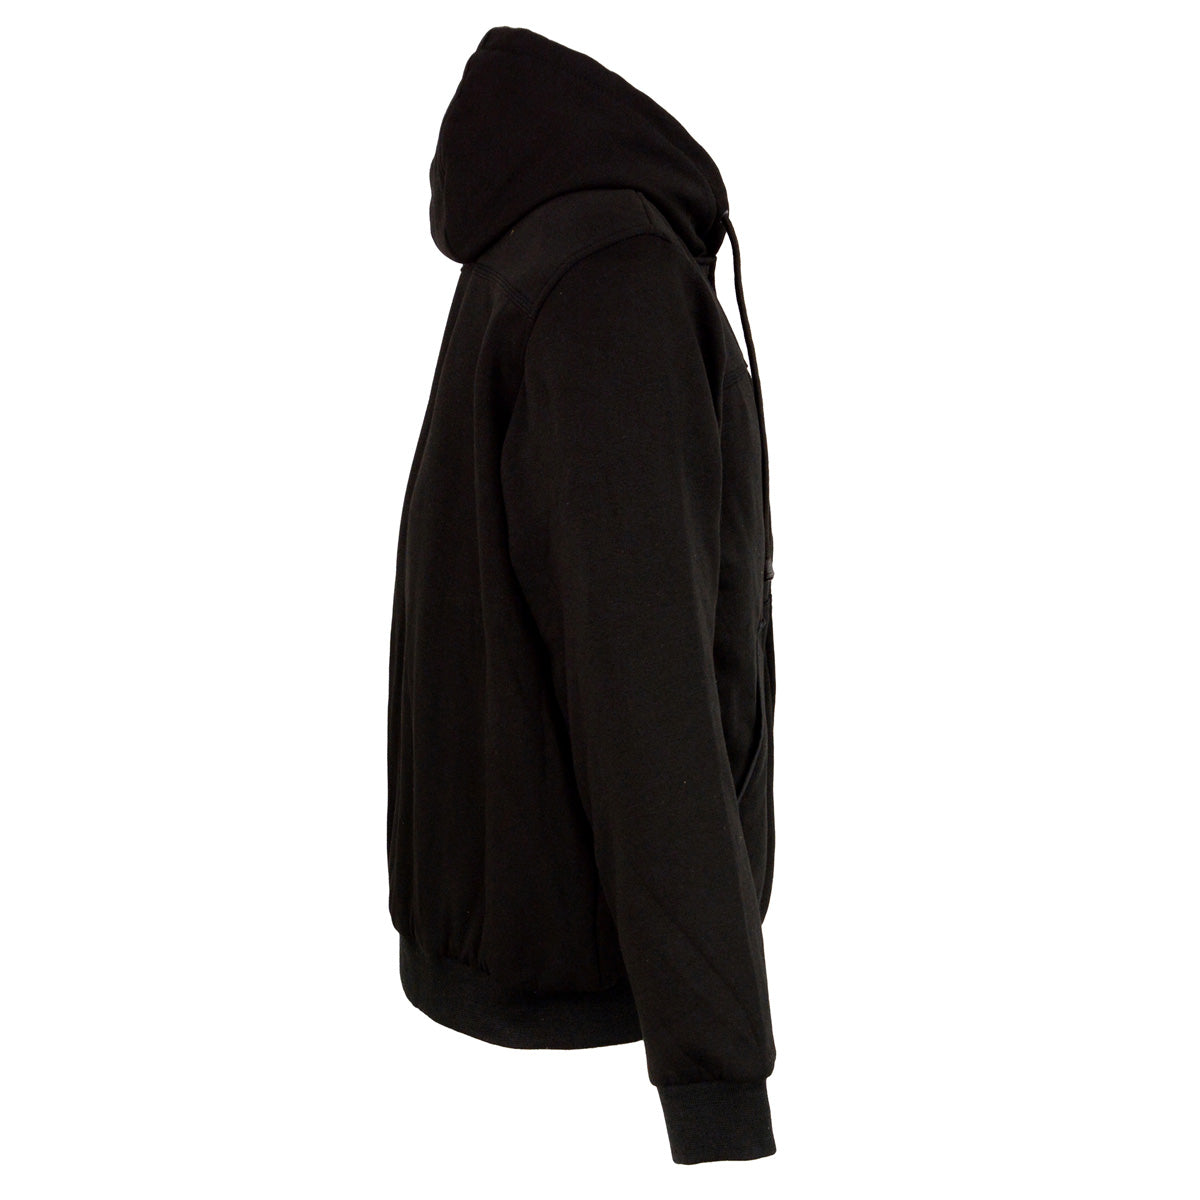 Nexgen Heat MPM1713SET Men's “Fiery’’ Heated Hoodie- Black Zipper Front Sweatshirt Jacket for Winter w/Battery Pack